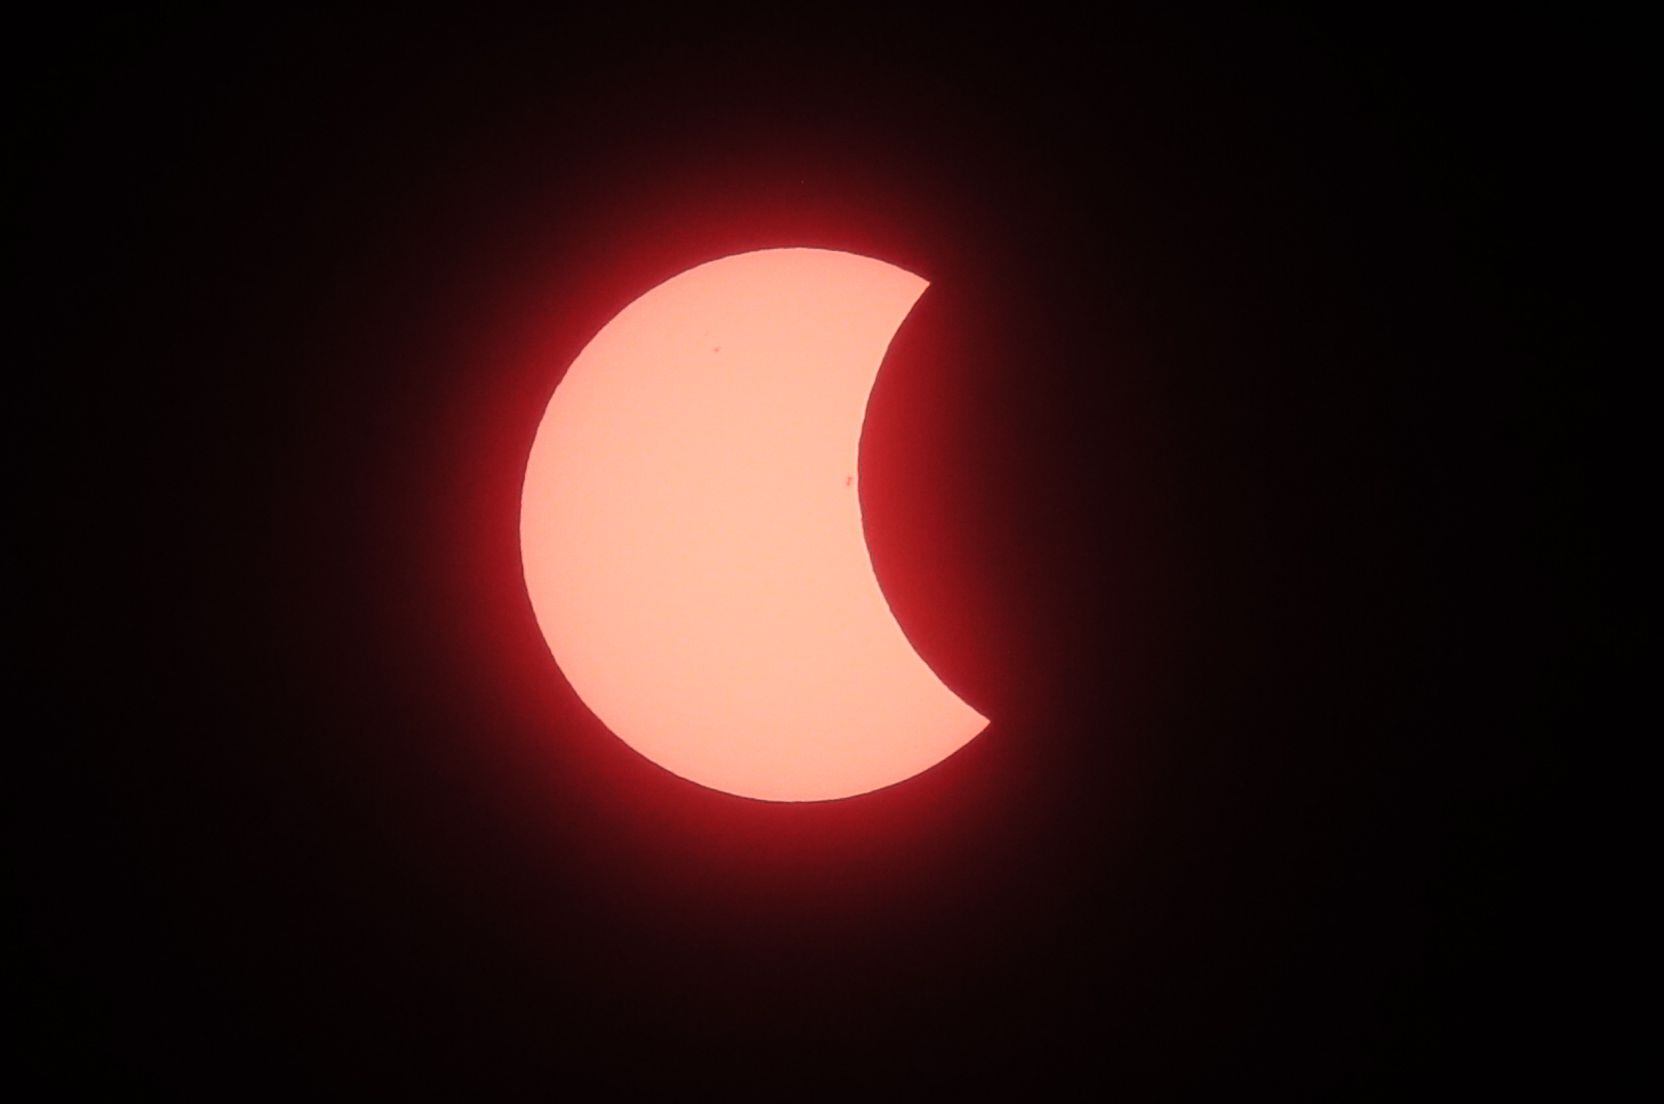 El eclipse inició como un evento parcial en Mazatlán, México, antes de alcanzar su totalidad en Nazas, Durango /EFE/ Gustavo Amador